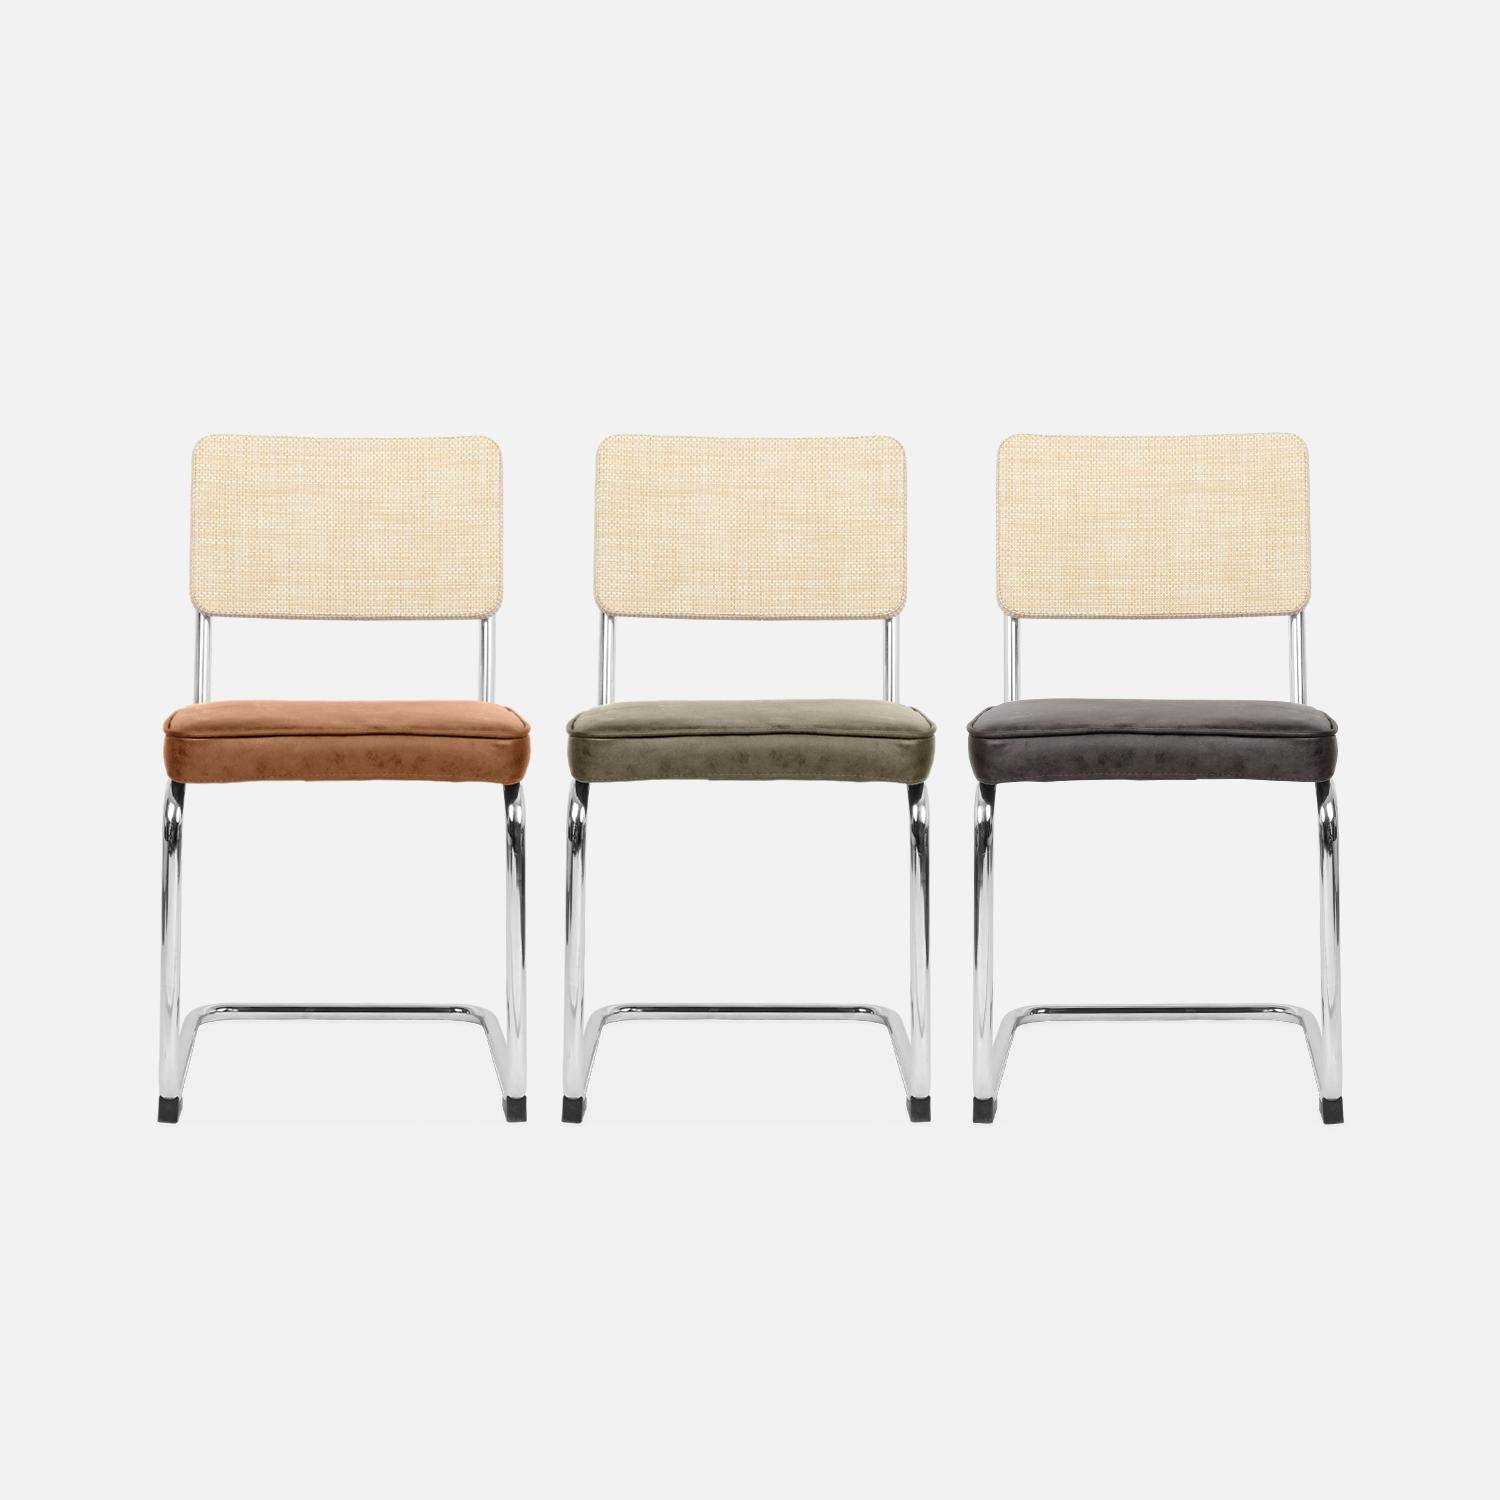 2 cadeiras cantilever - Maja - tecido preto e resina com efeito rattan, 46 x 54,5 x 84,5cm Photo9